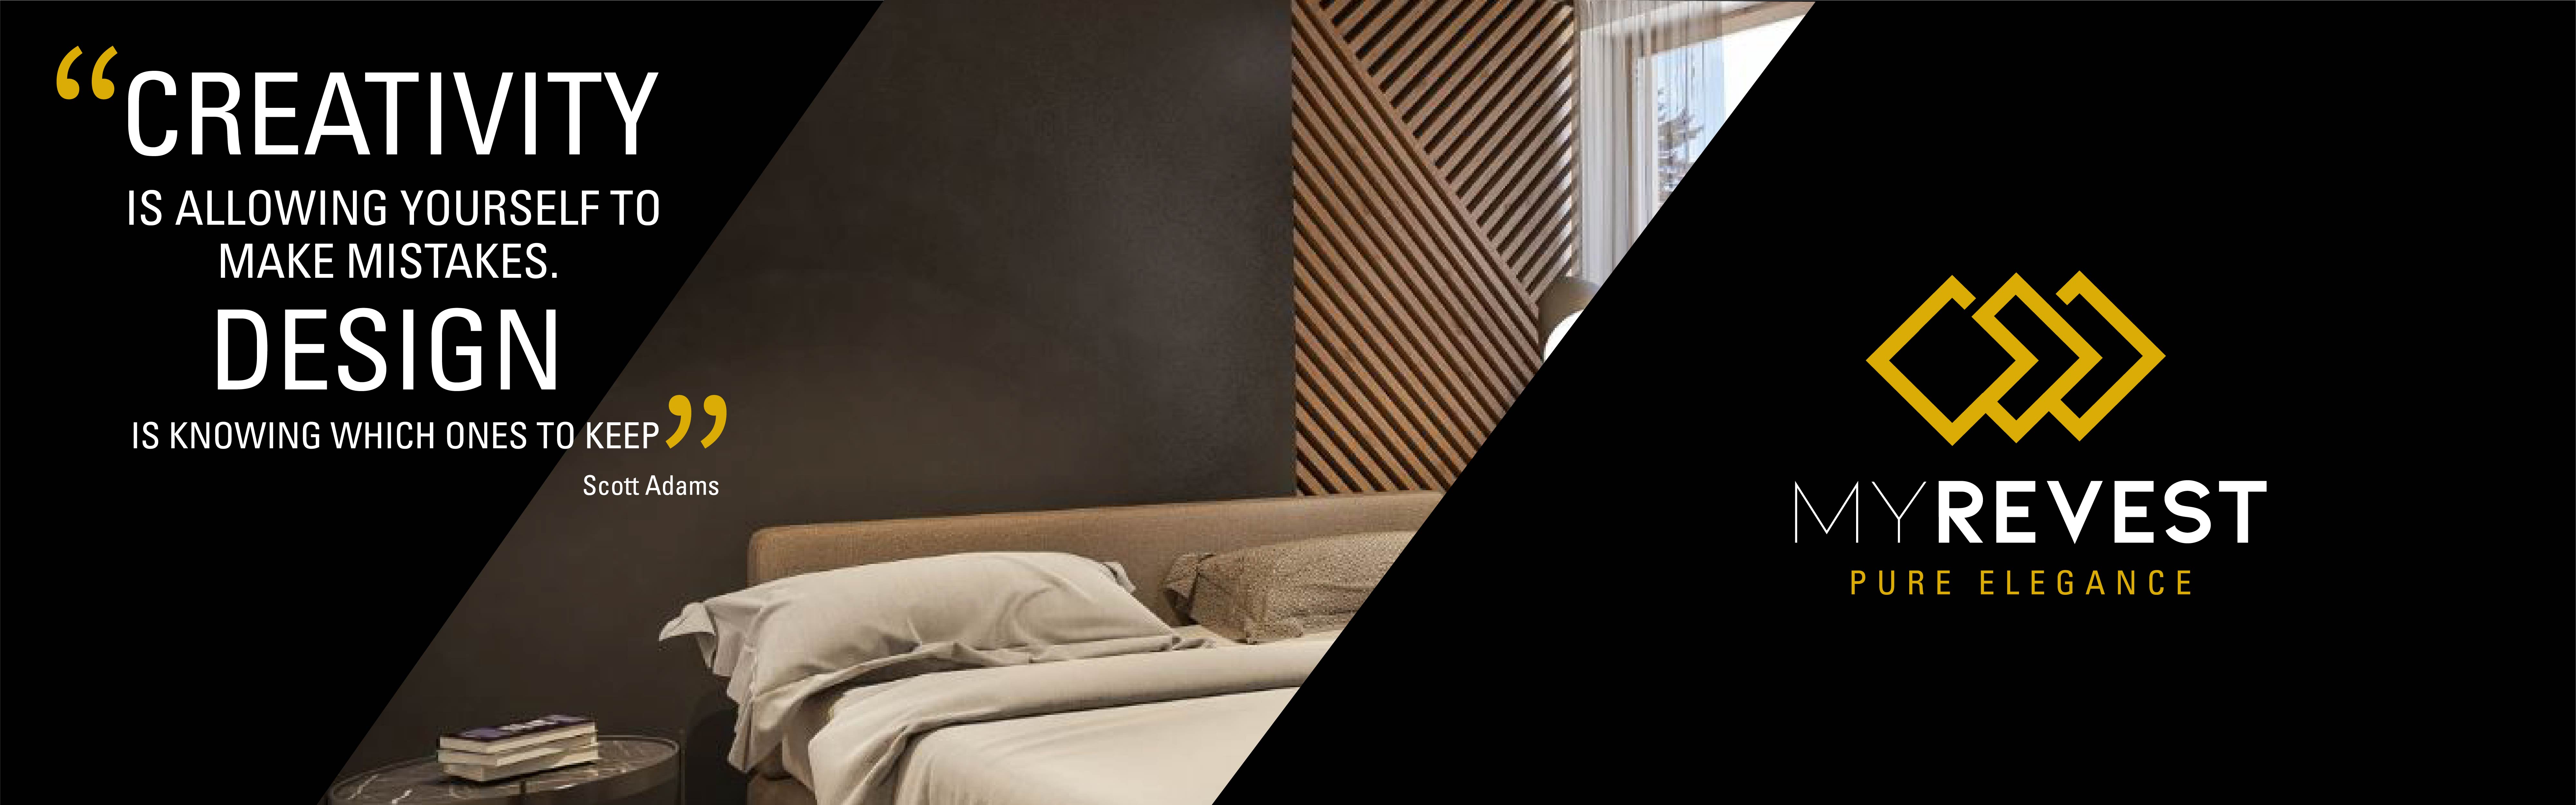 Mikrocementbeläggning på väggen i ett minimalistiskt sovrum bredvid MyRevest-logotypen